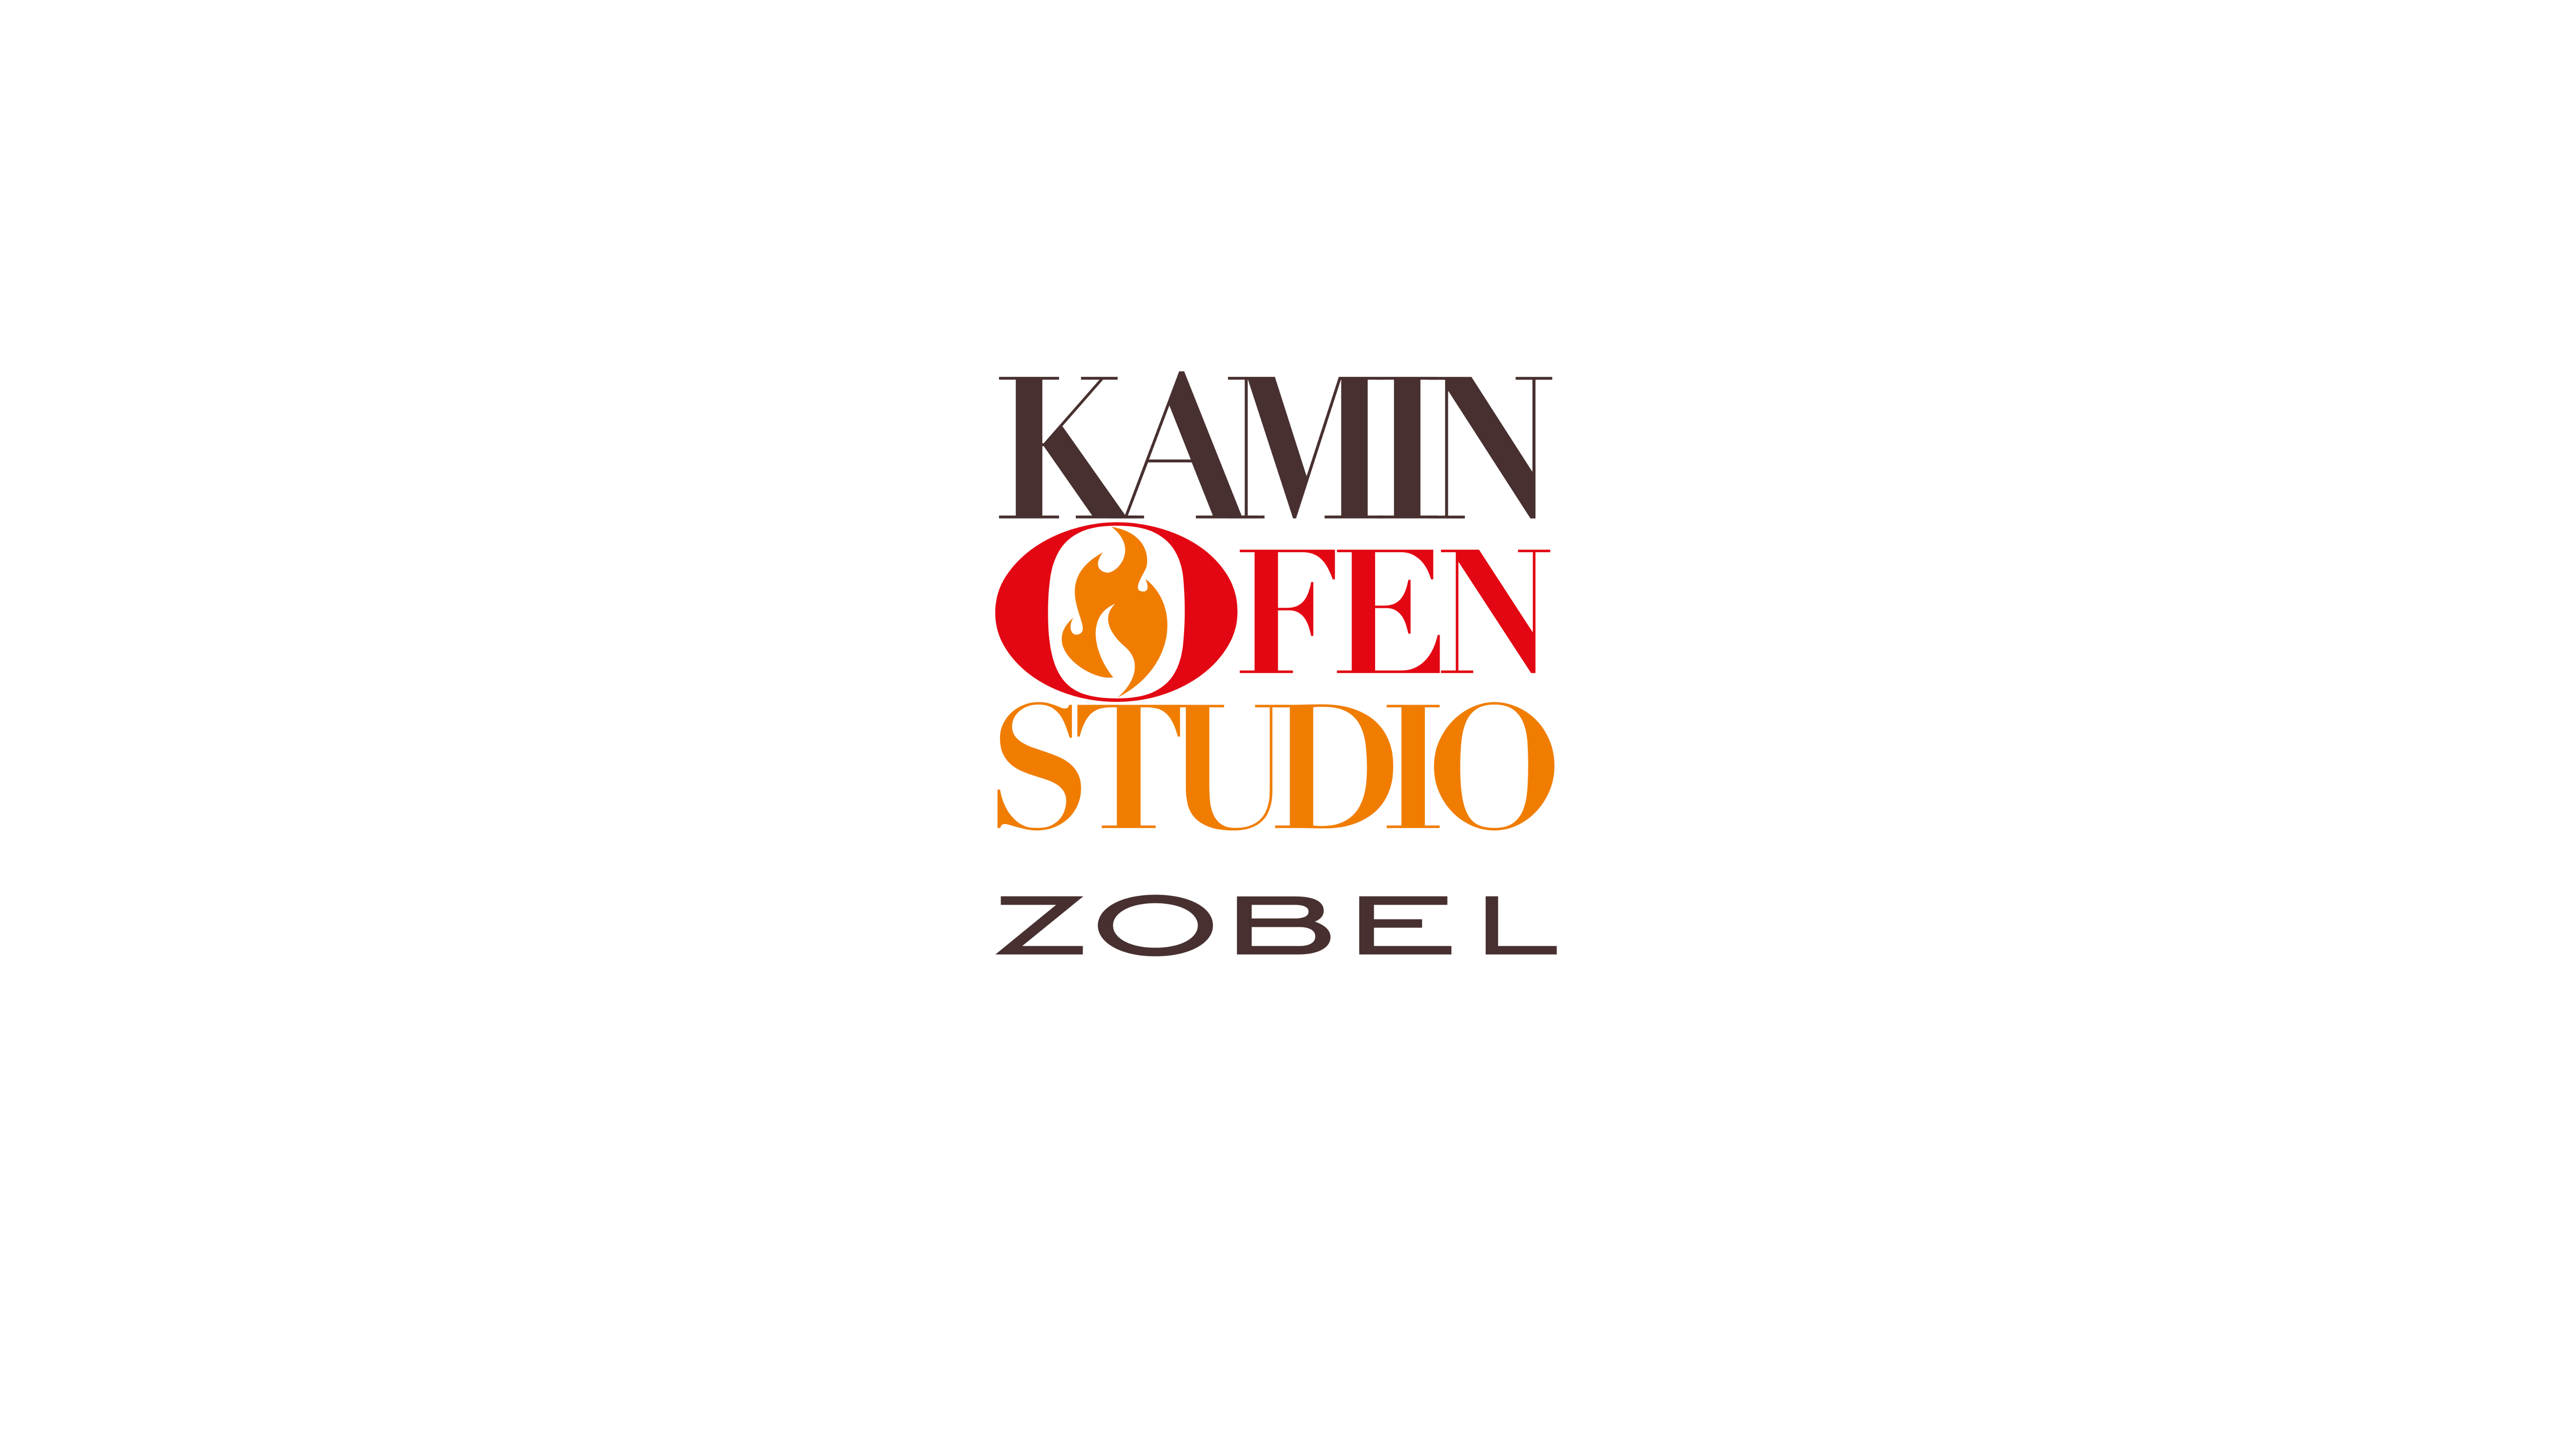 Kaminofenstudio Zobel Logo